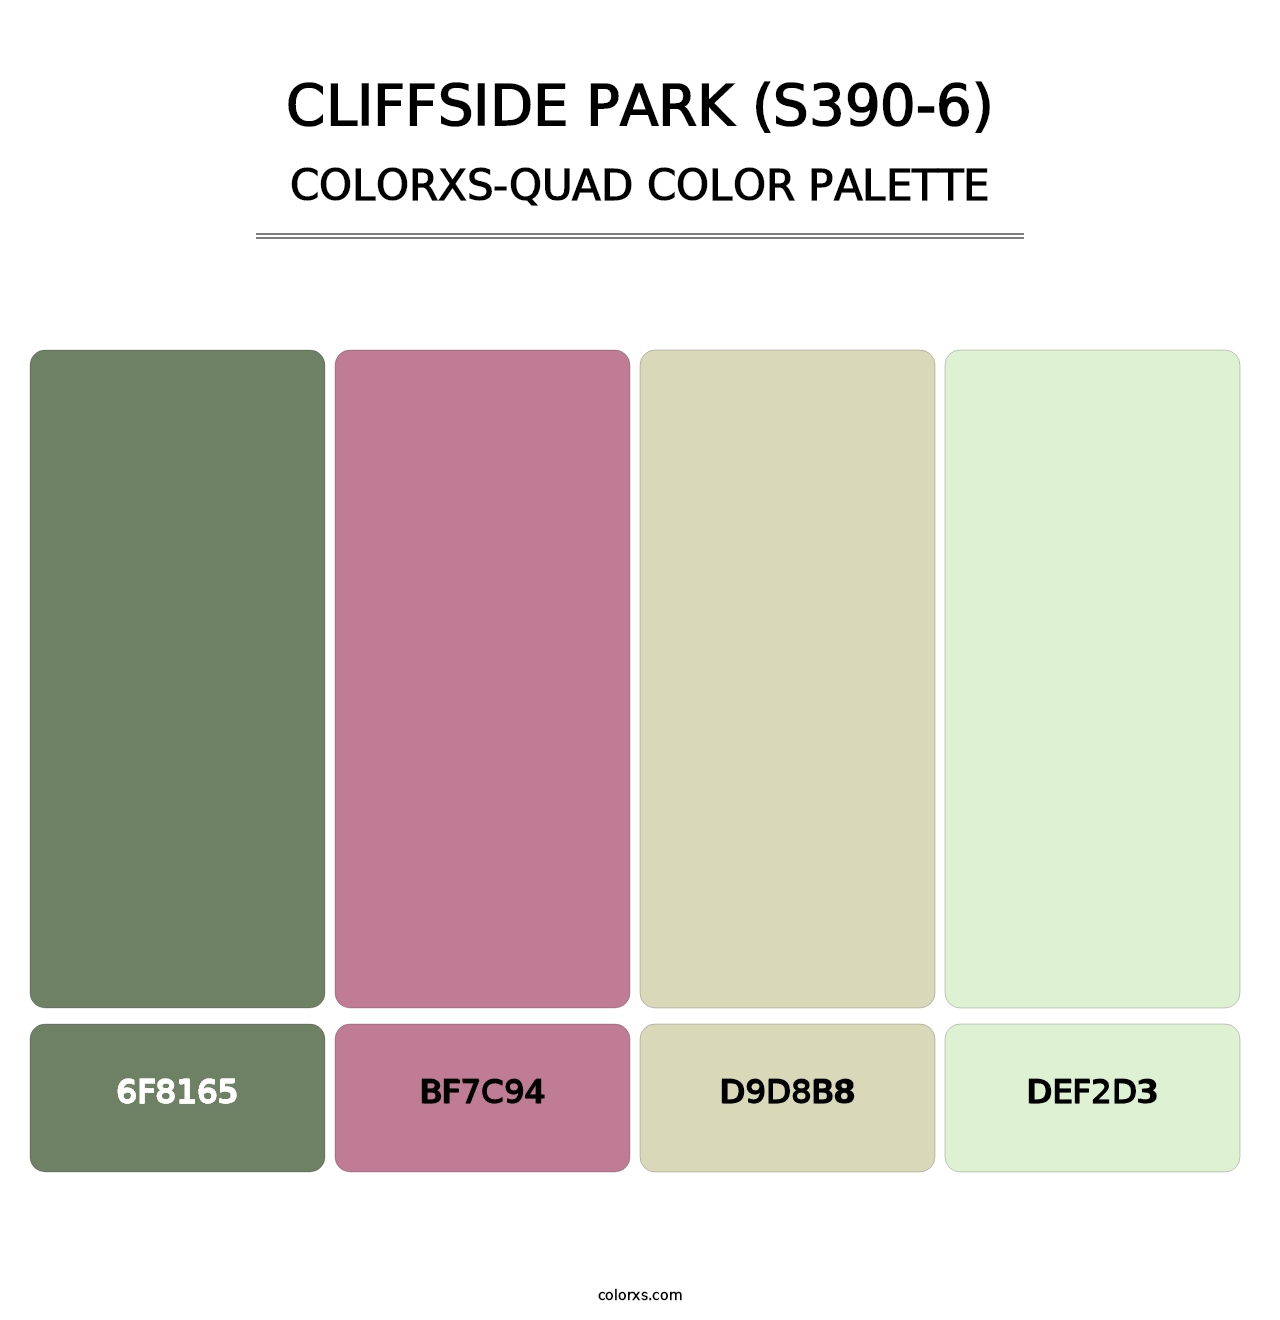 Cliffside Park (S390-6) - Colorxs Quad Palette